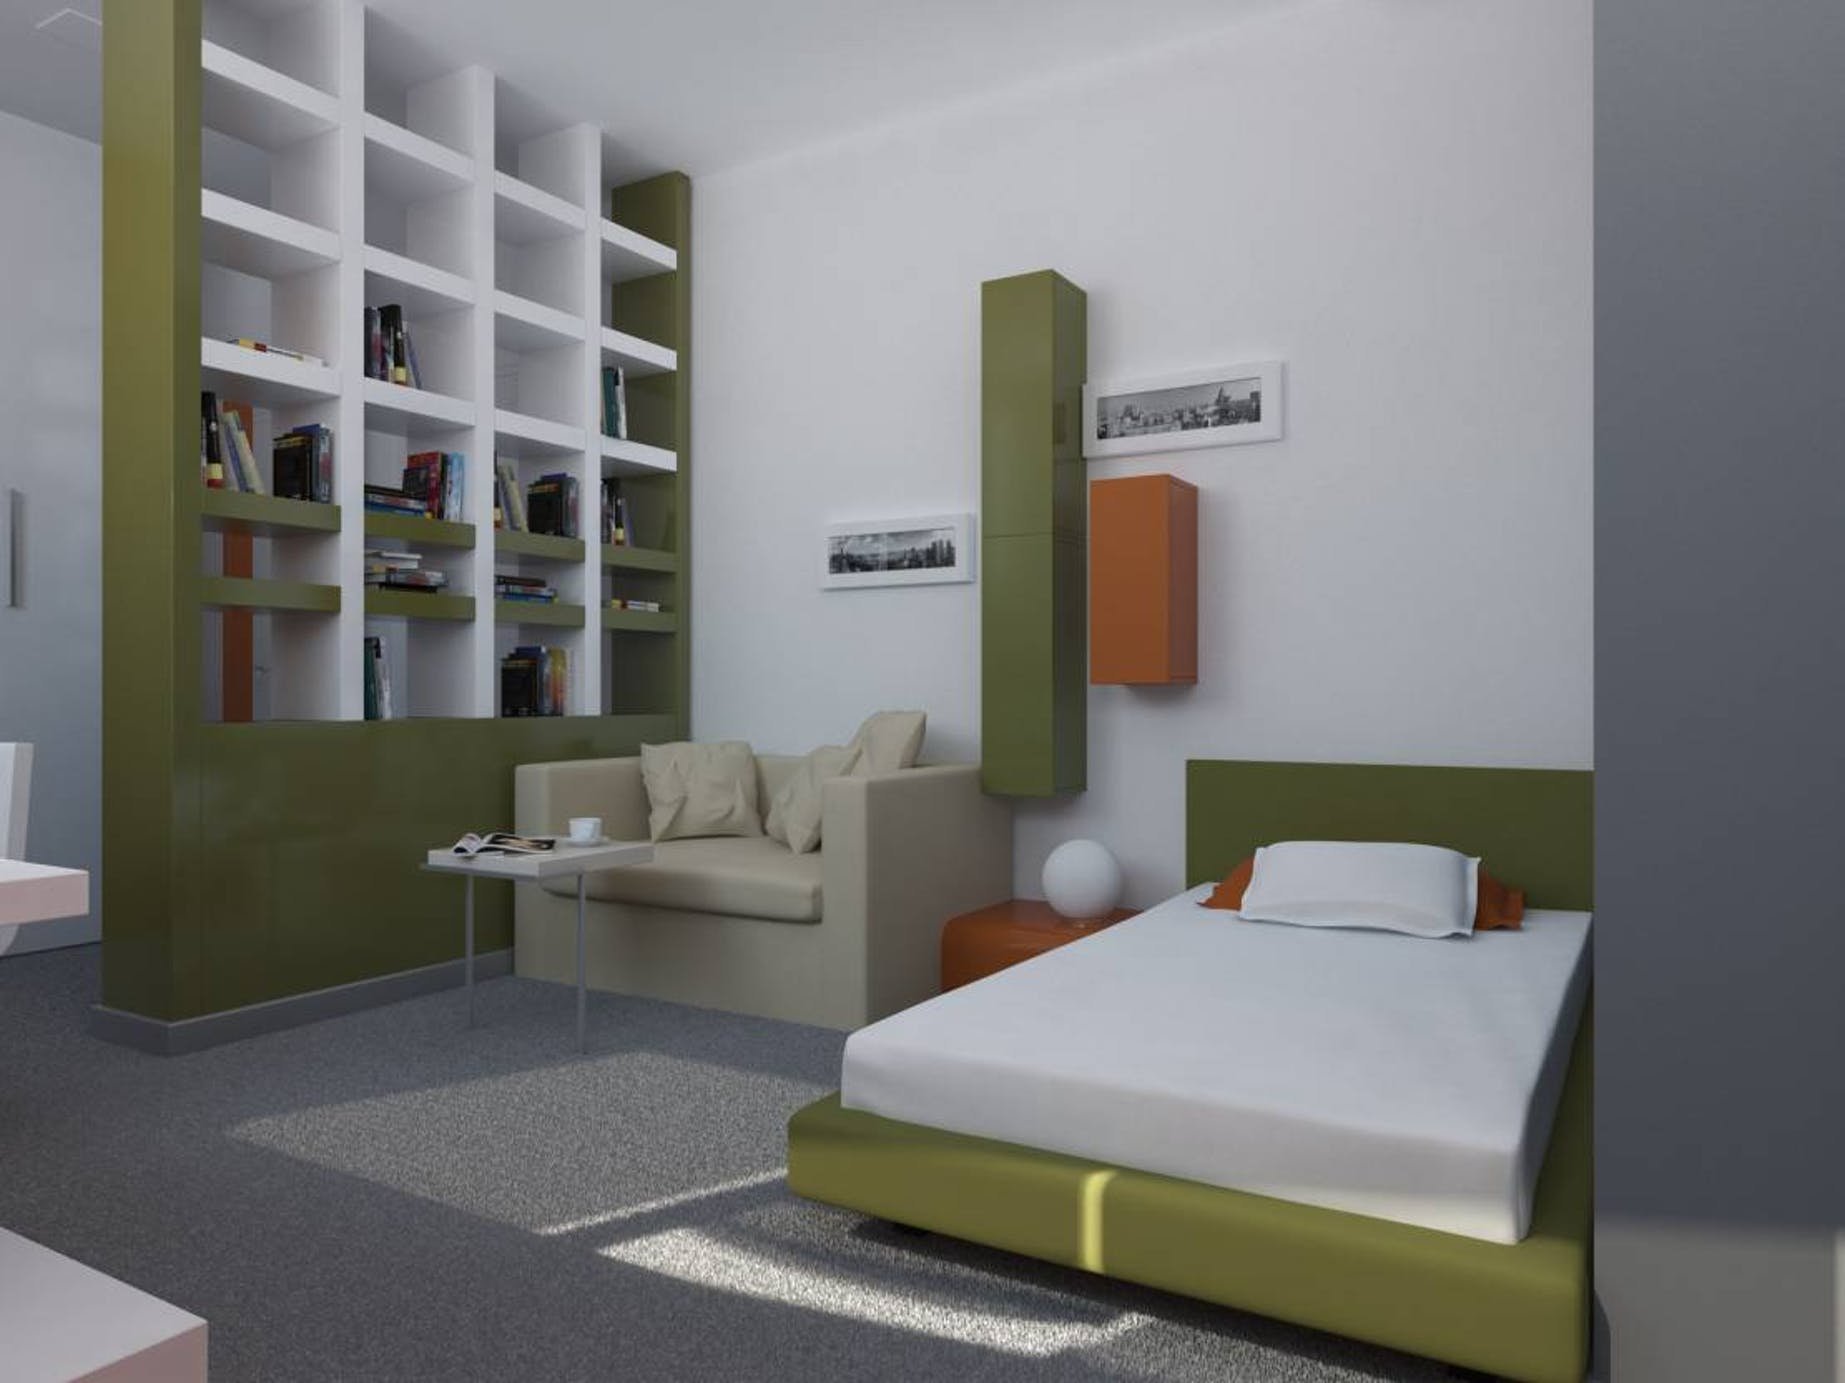 Современный дизайн интерьера комнаты в общежитии. как правильно работать с пространством в квартире?